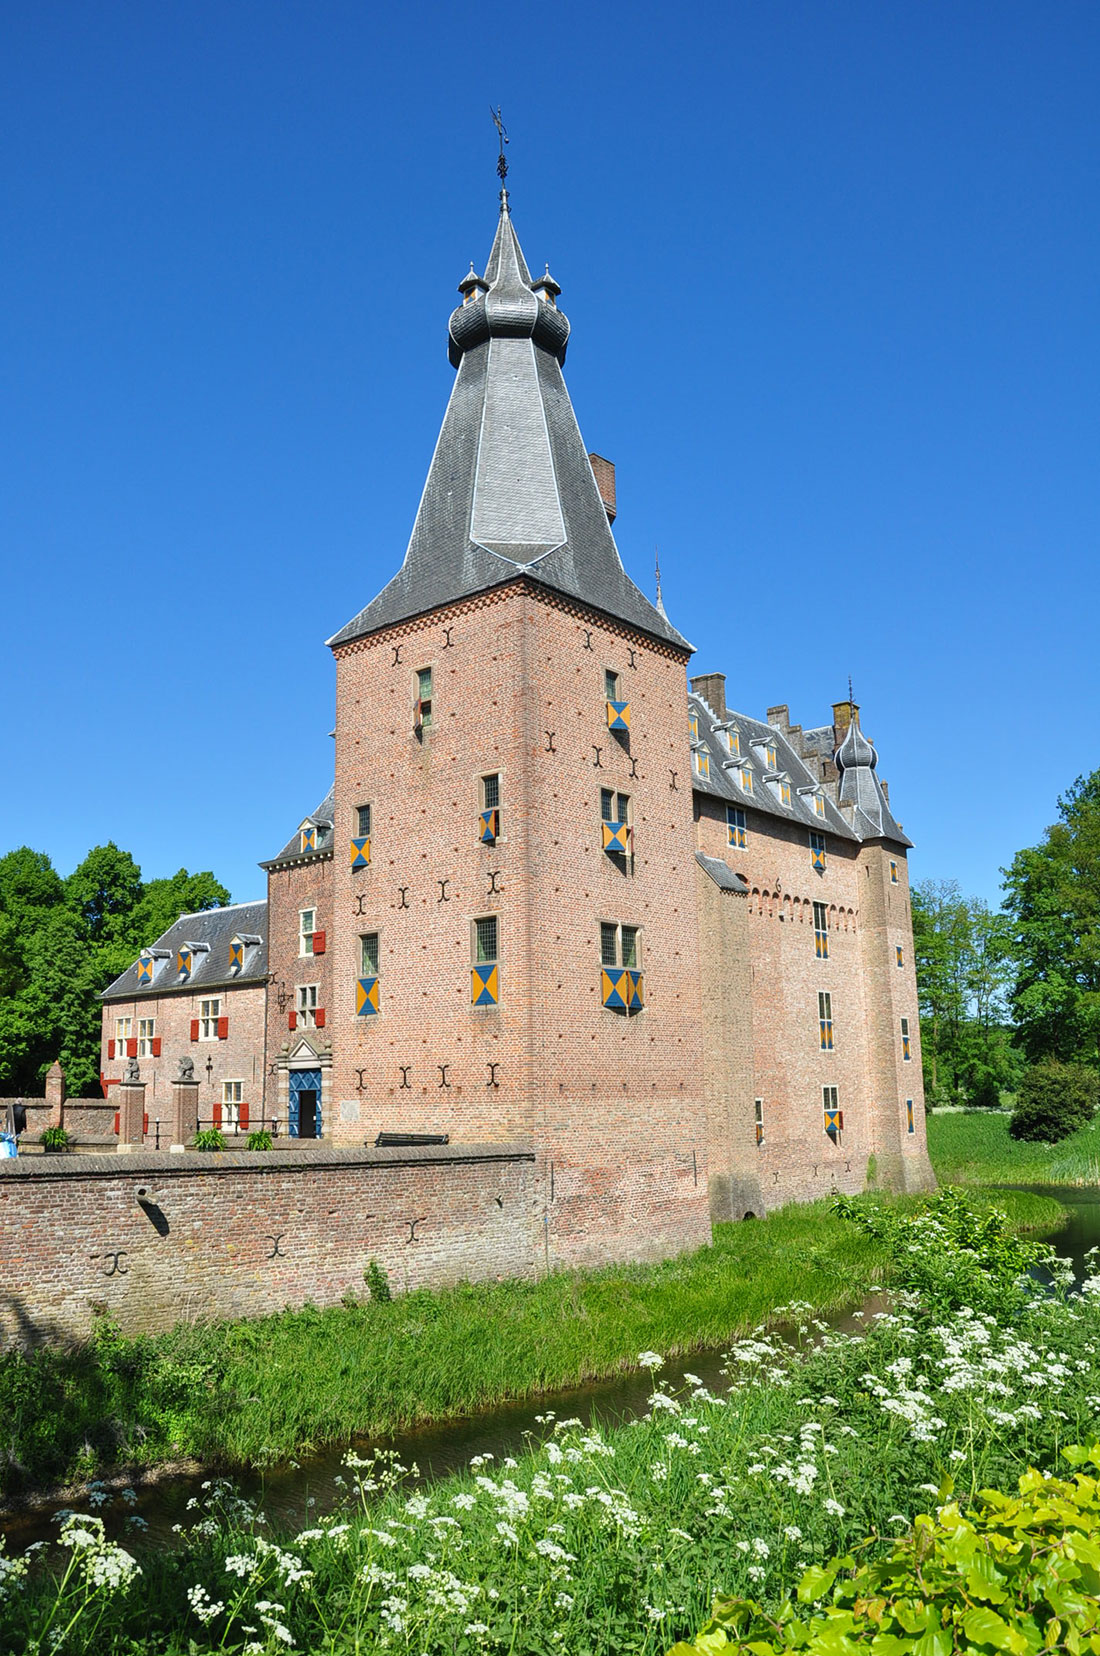 Doorwerth Castle